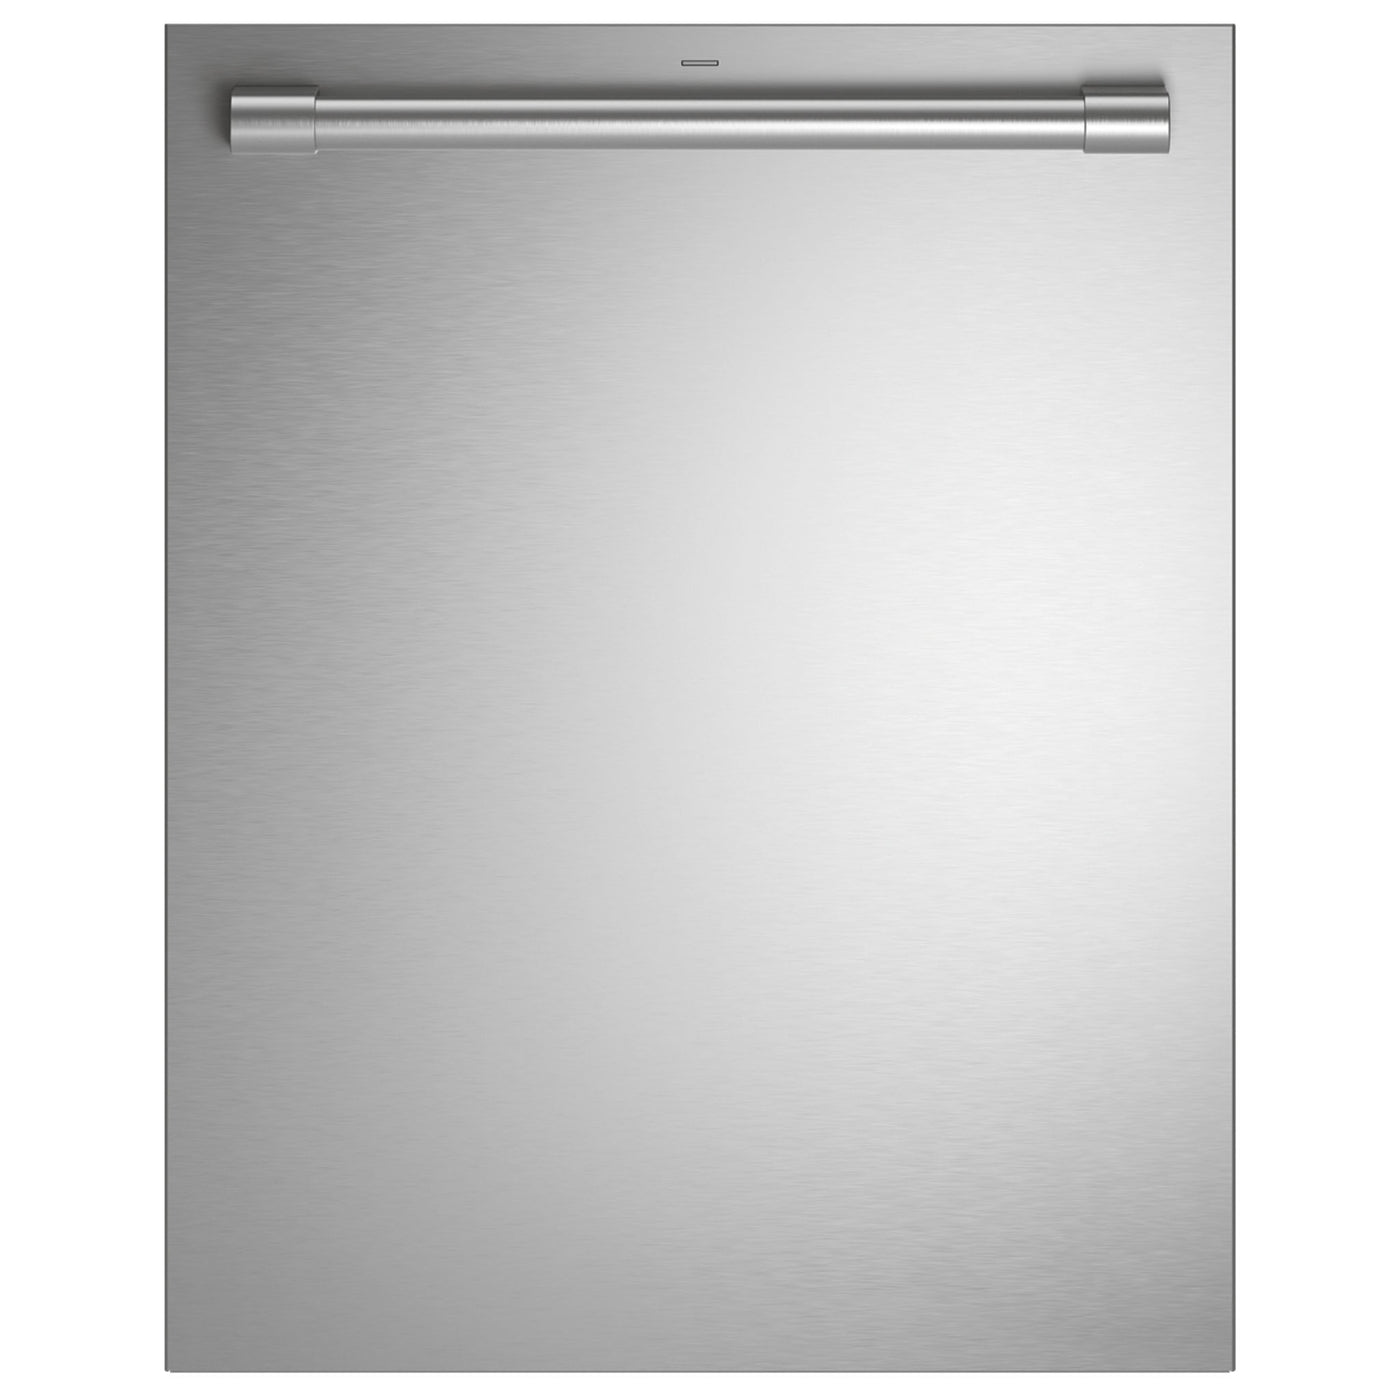 34" x 23 3/4" x 24" Monogram Fully Integrated Dishwasher